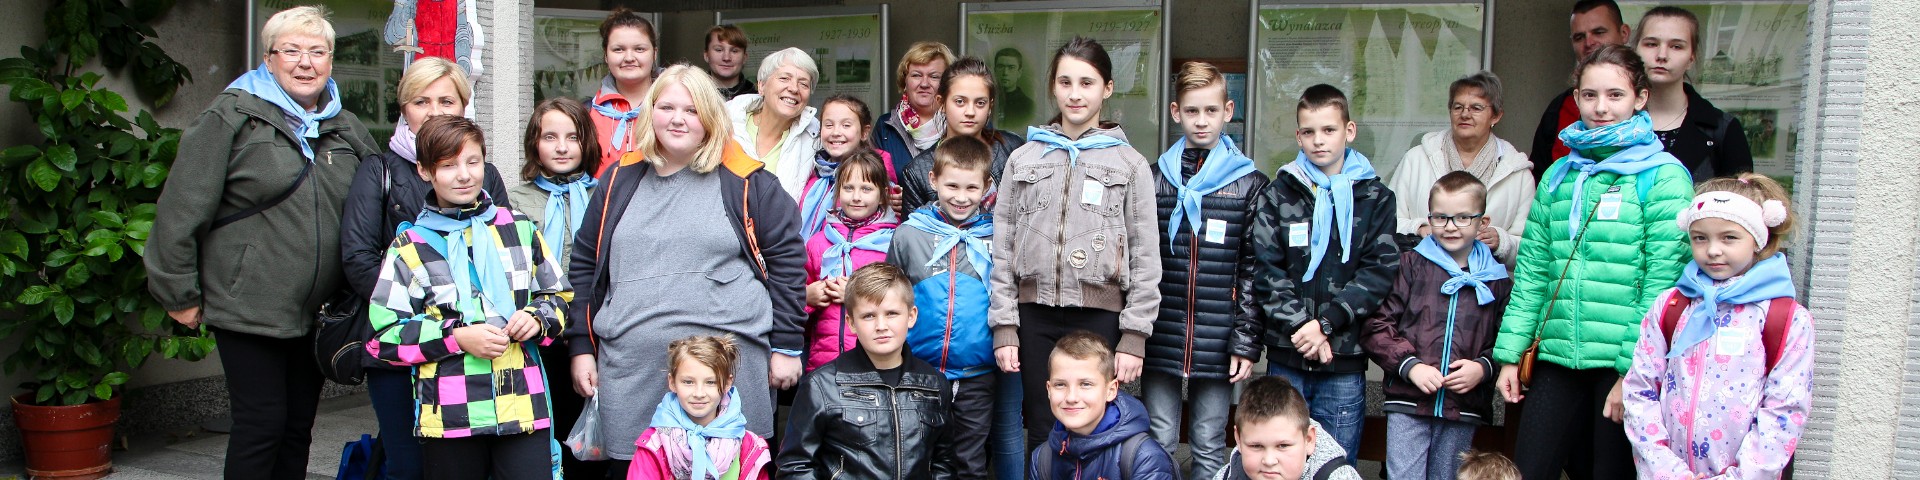 Przygotowania do Ogólnopolskiego Spotkania Dzieci w Niepokalanowie